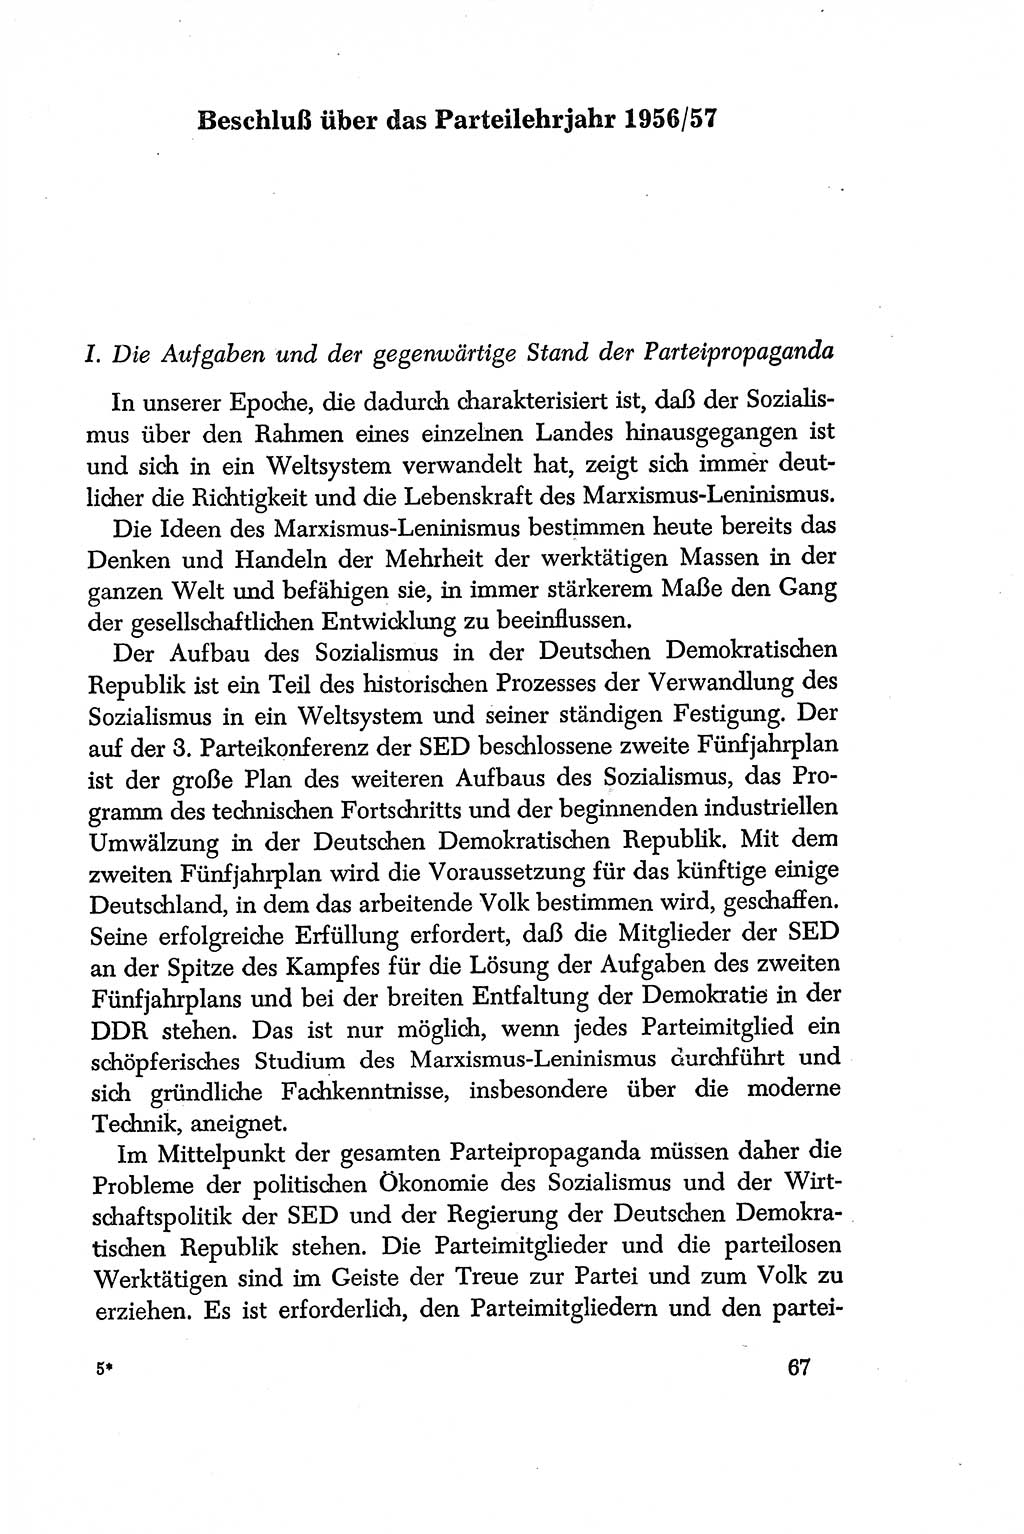 Dokumente der Sozialistischen Einheitspartei Deutschlands (SED) [Deutsche Demokratische Republik (DDR)] 1956-1957, Seite 67 (Dok. SED DDR 1956-1957, S. 67)